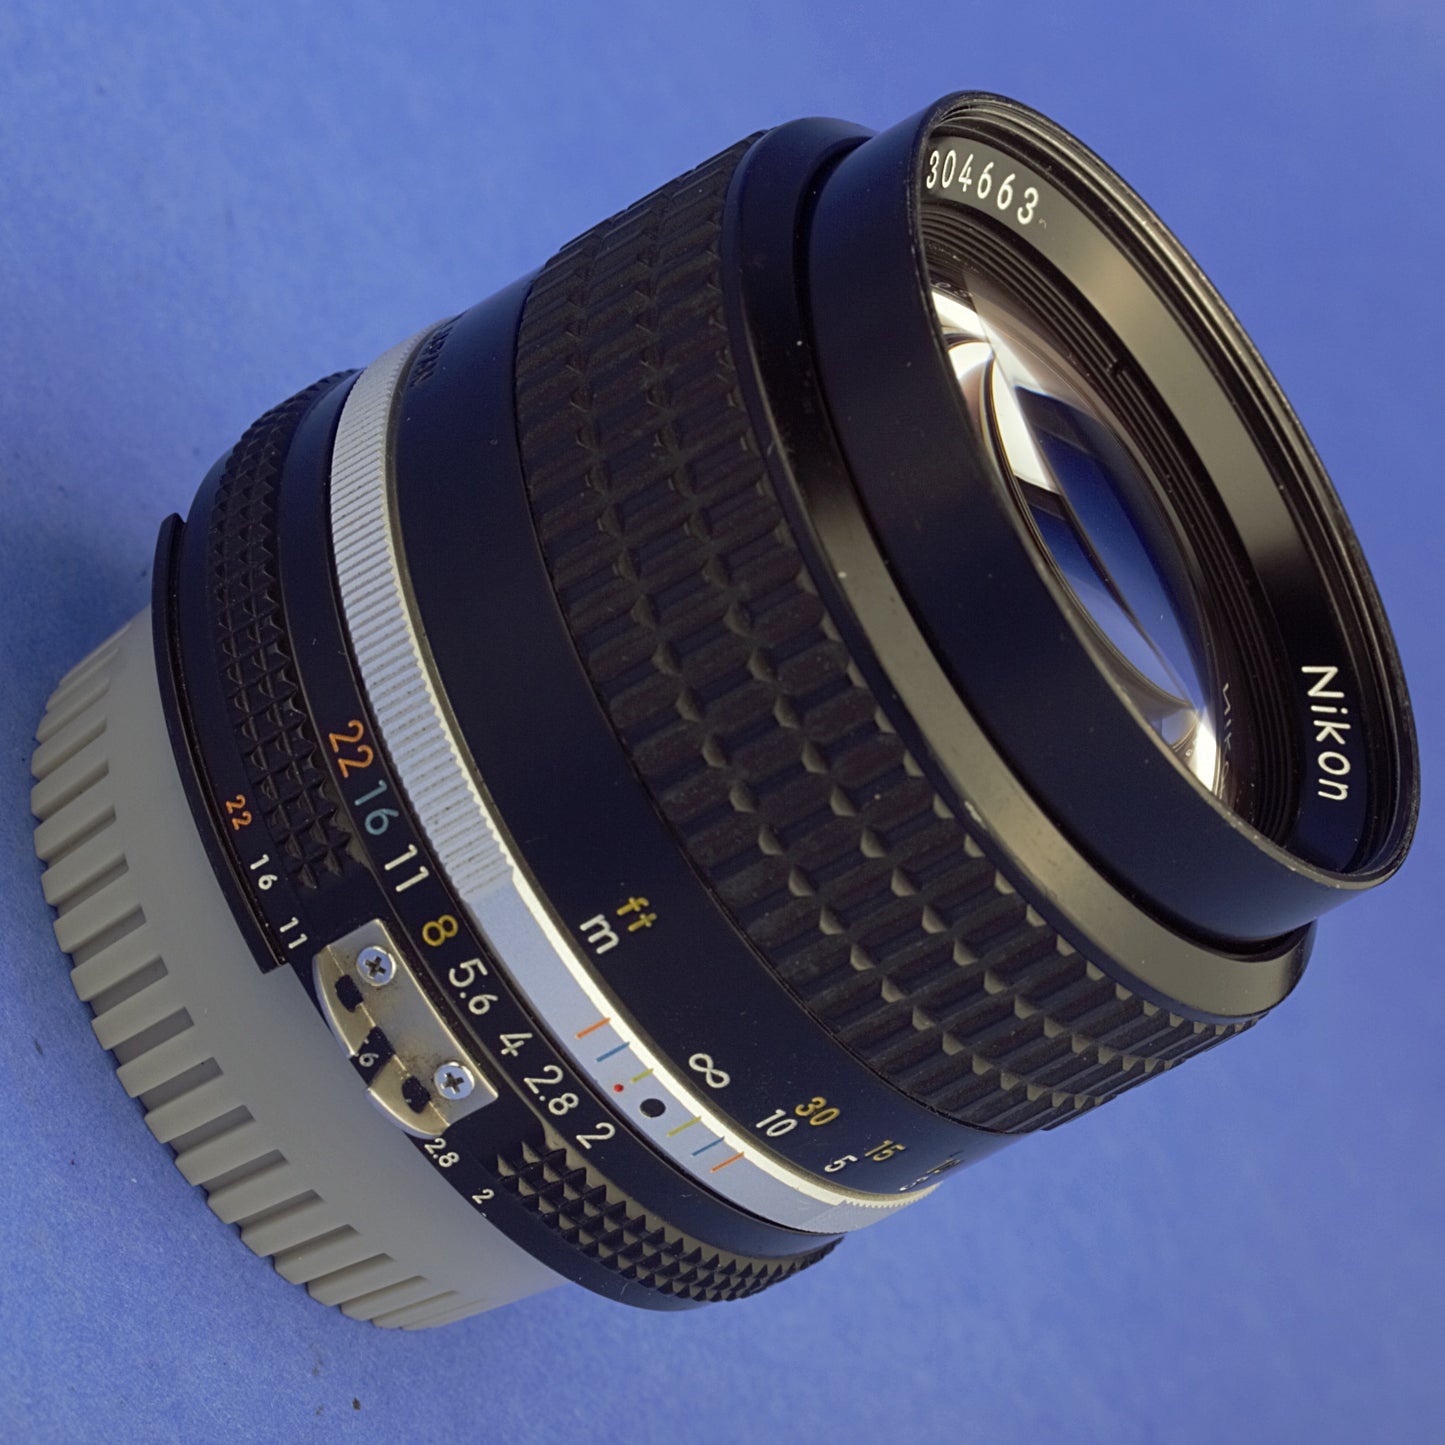 Nikon Nikkor 85mm F2 Ai-S Lens